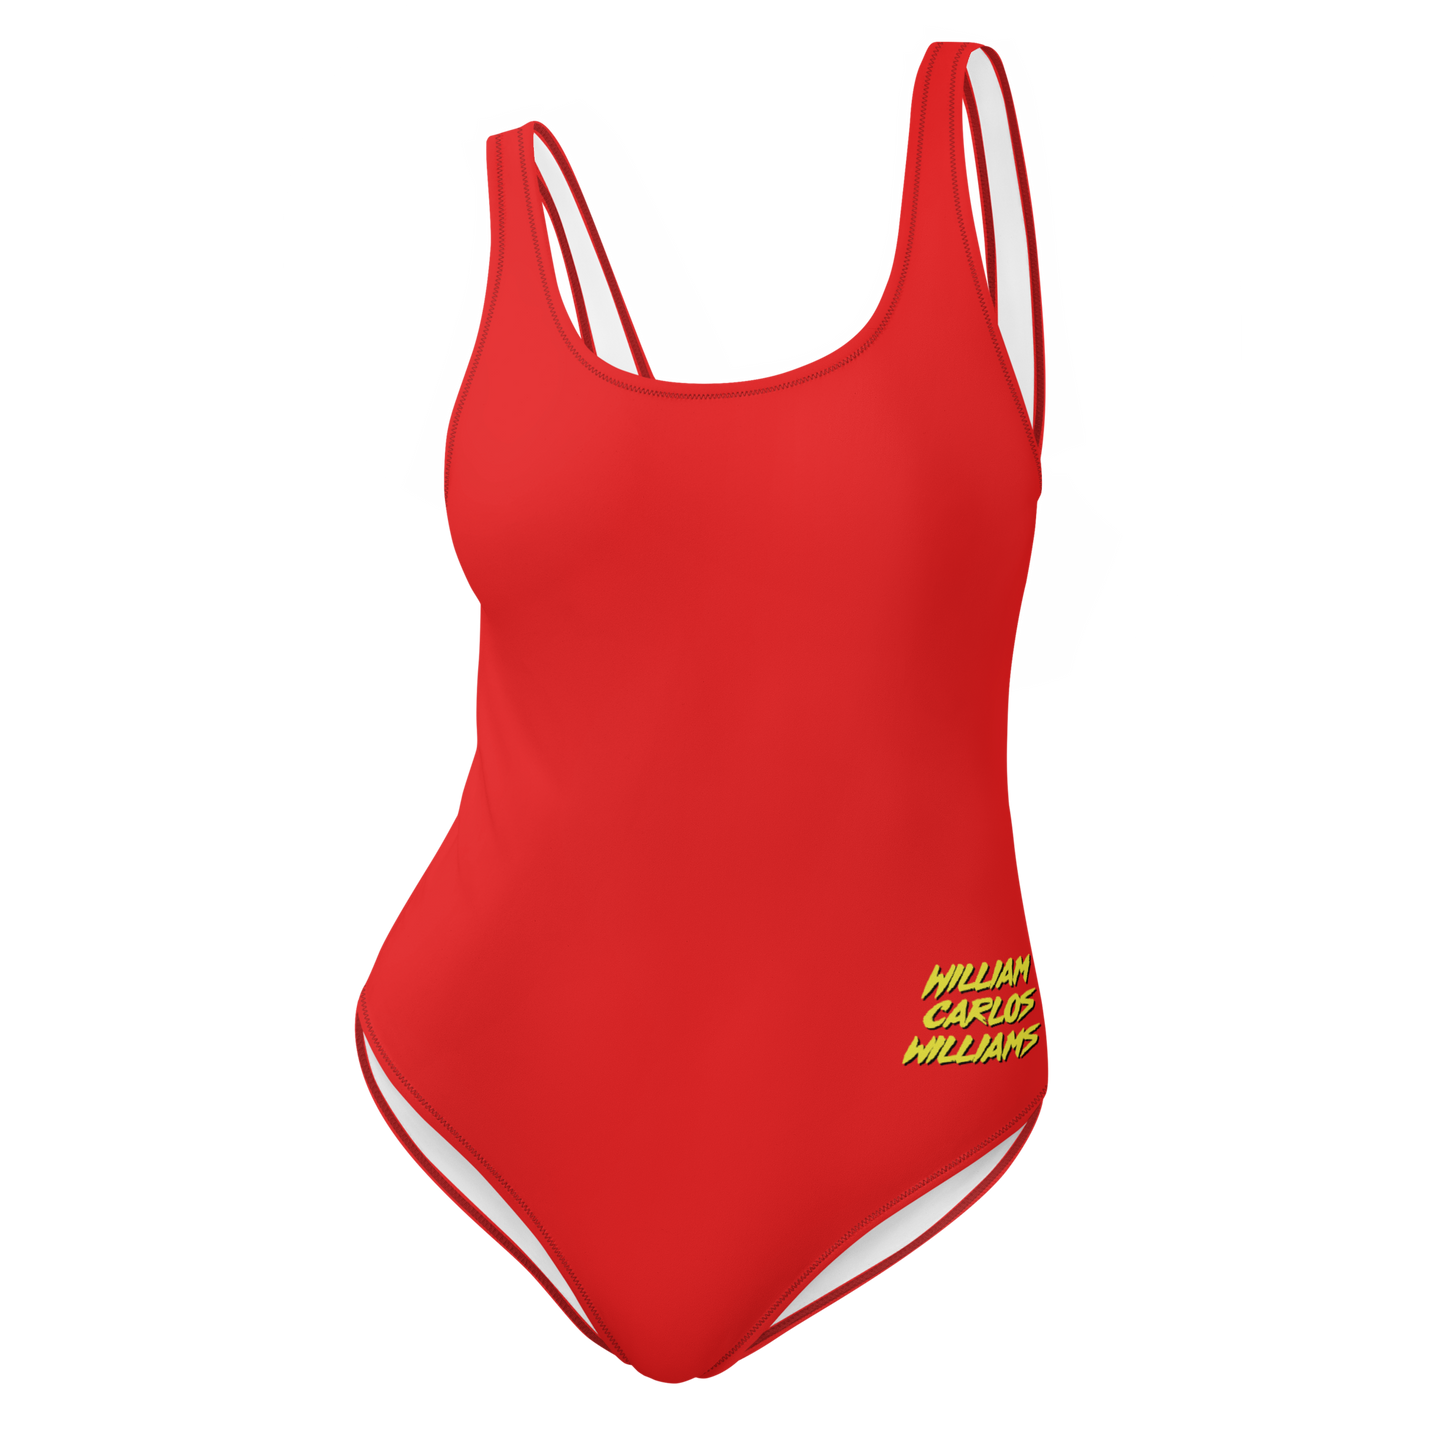 William Carlos Williams Swim Suit